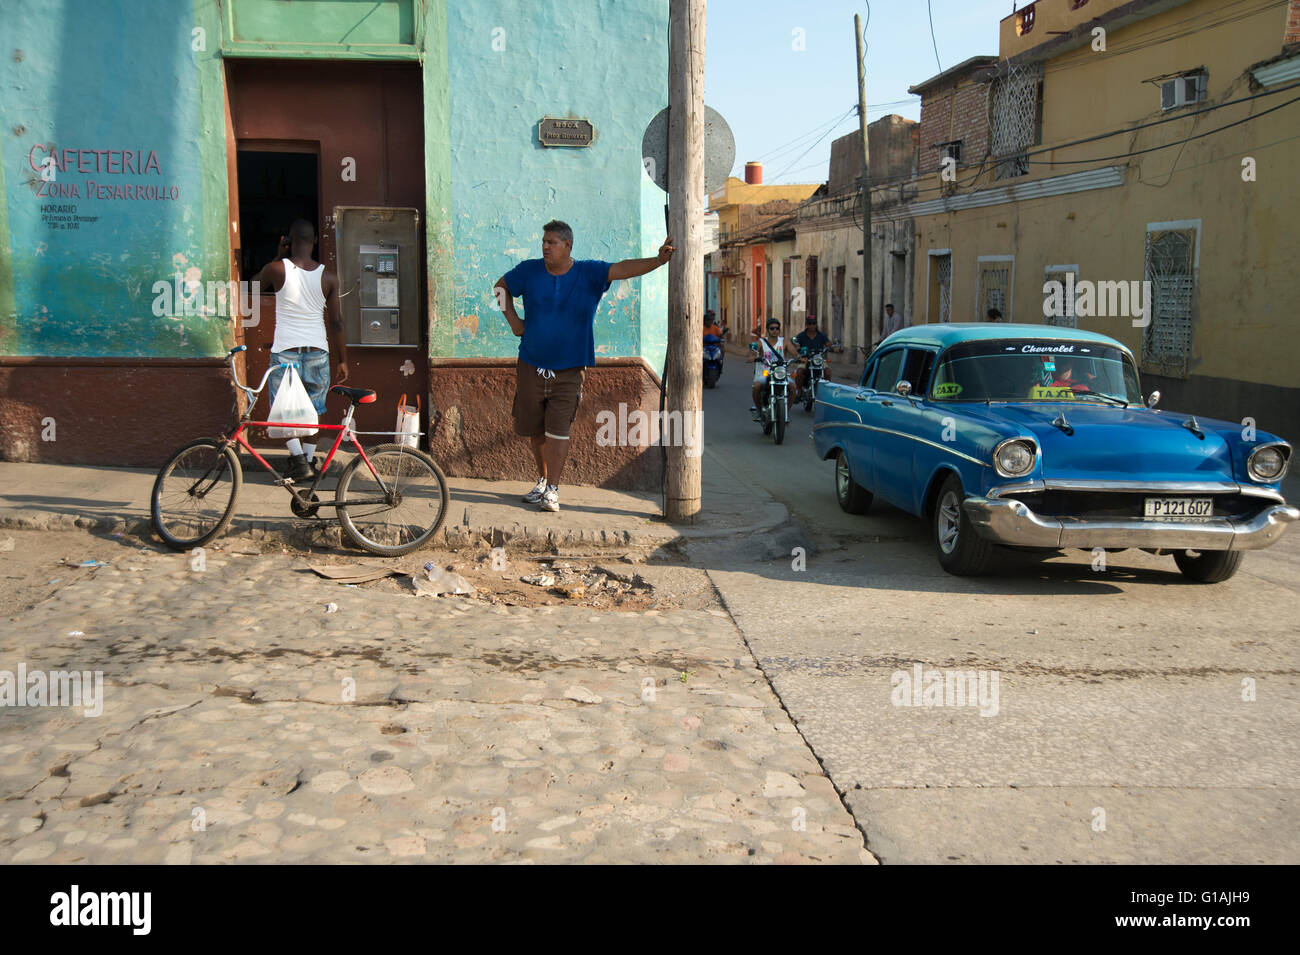 Un vecchio classico anni cinquanta la vettura americana passando un telefono pubblico coda su un angolo di strada in Trinidad, Cuba Foto Stock